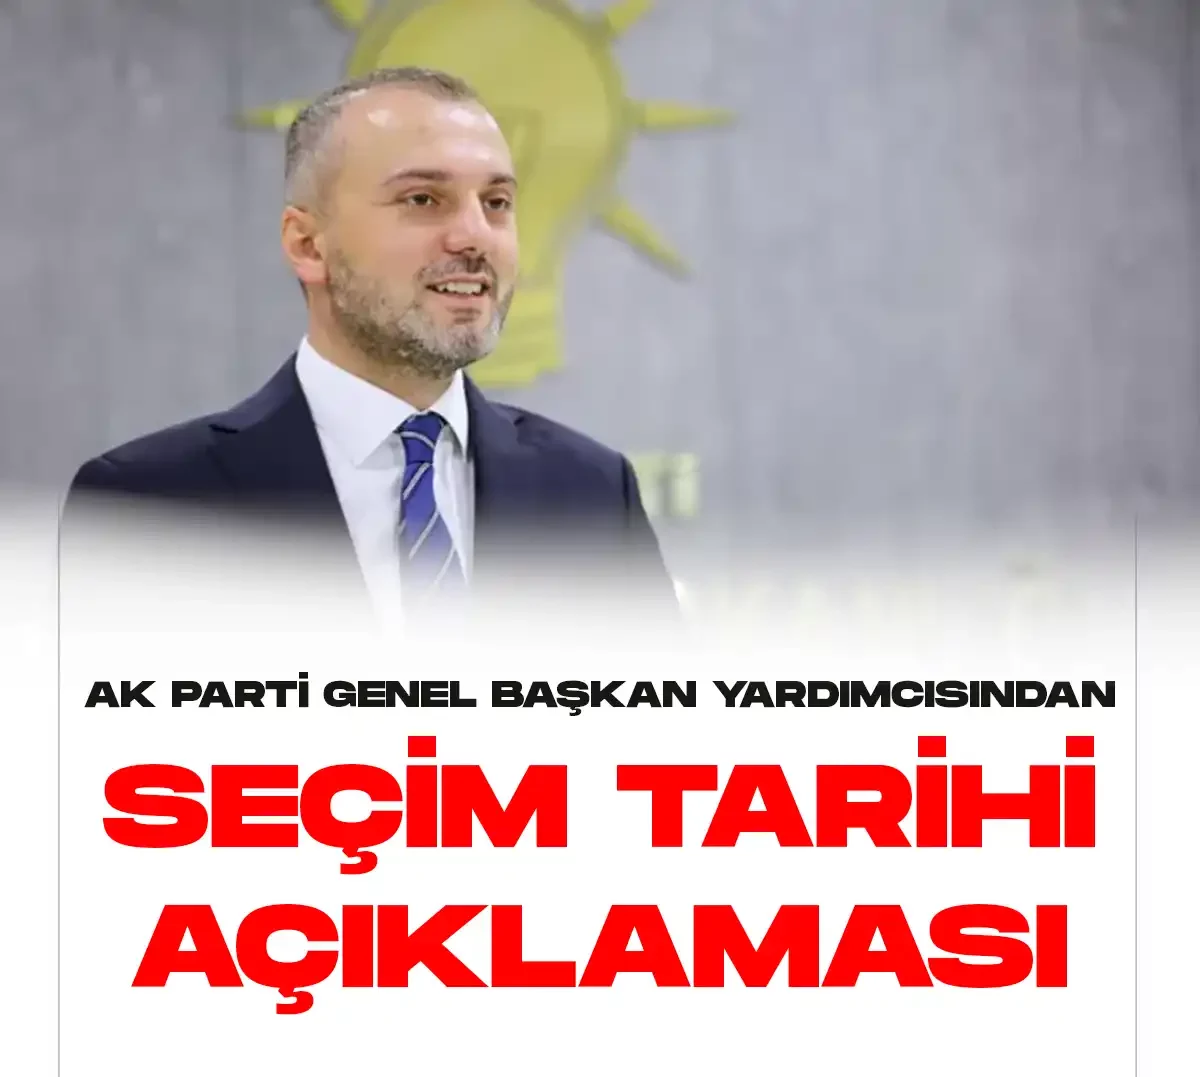 AK Partiden seçim tarihiyle ilgili yeni açıklama geldi.